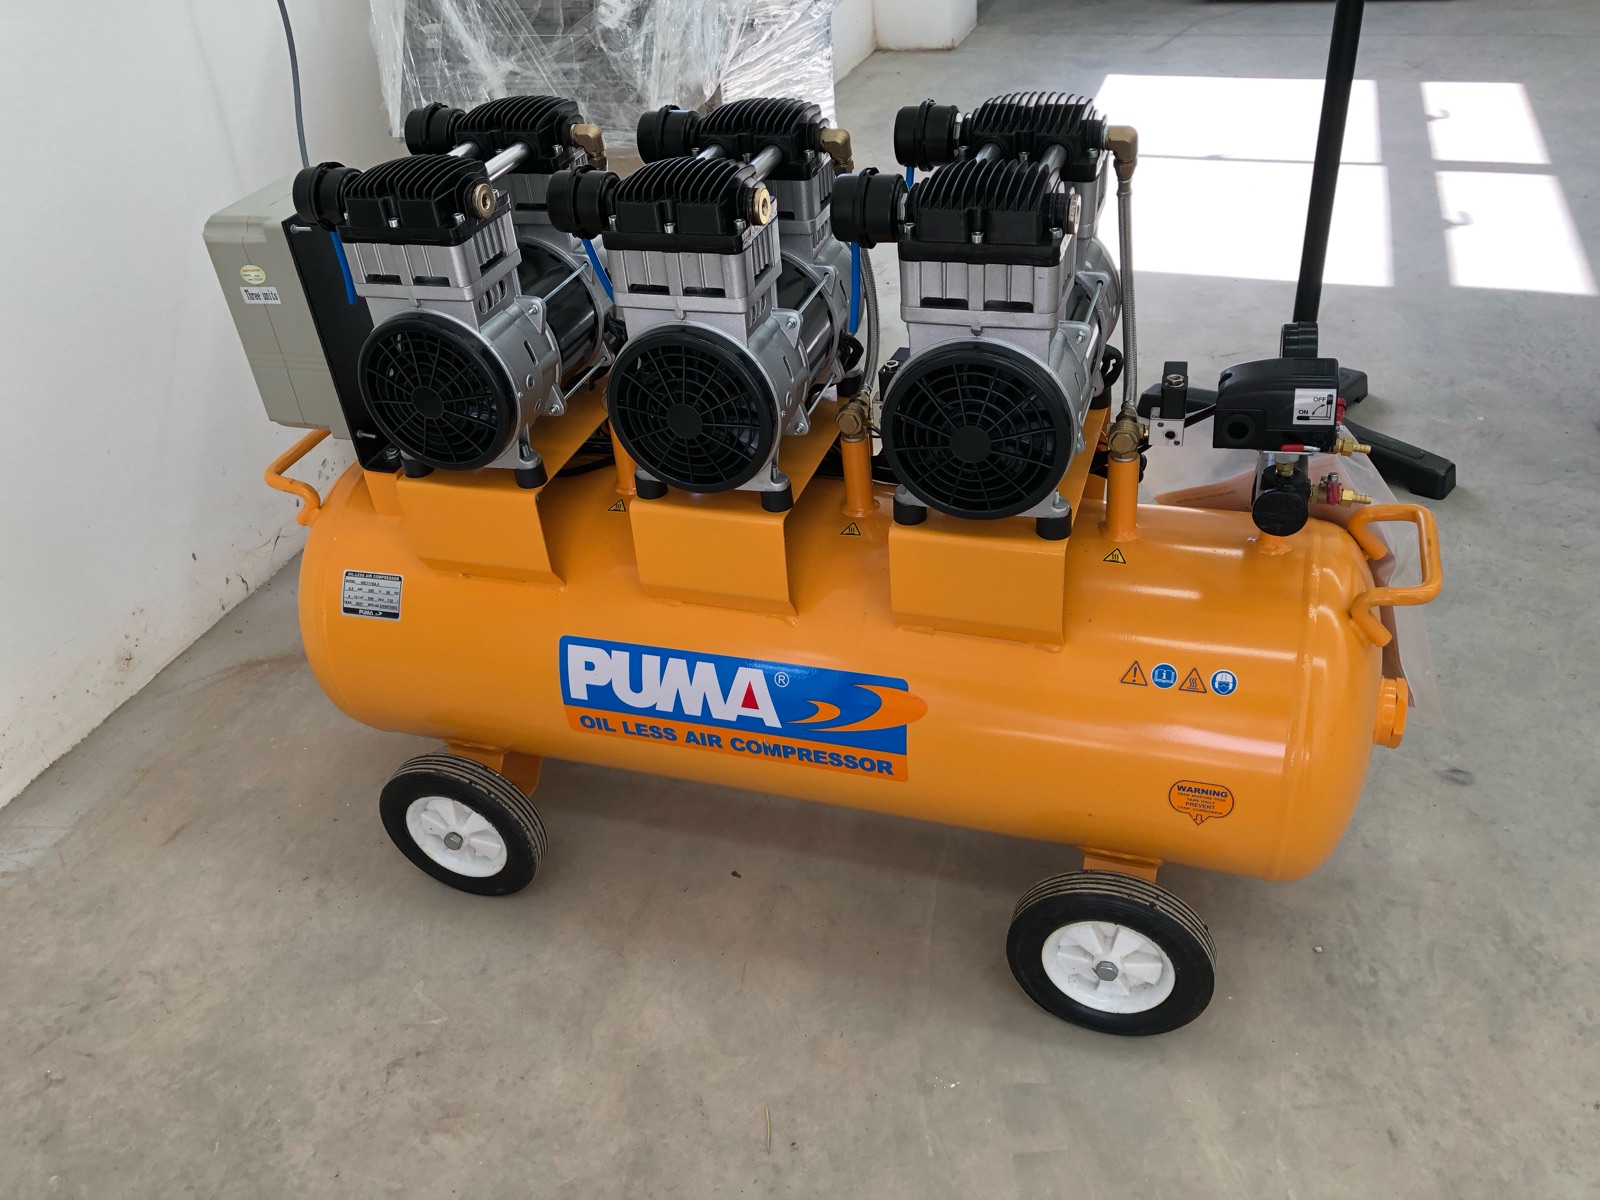 Puma Oil Less Air Compressor WE1110A-3